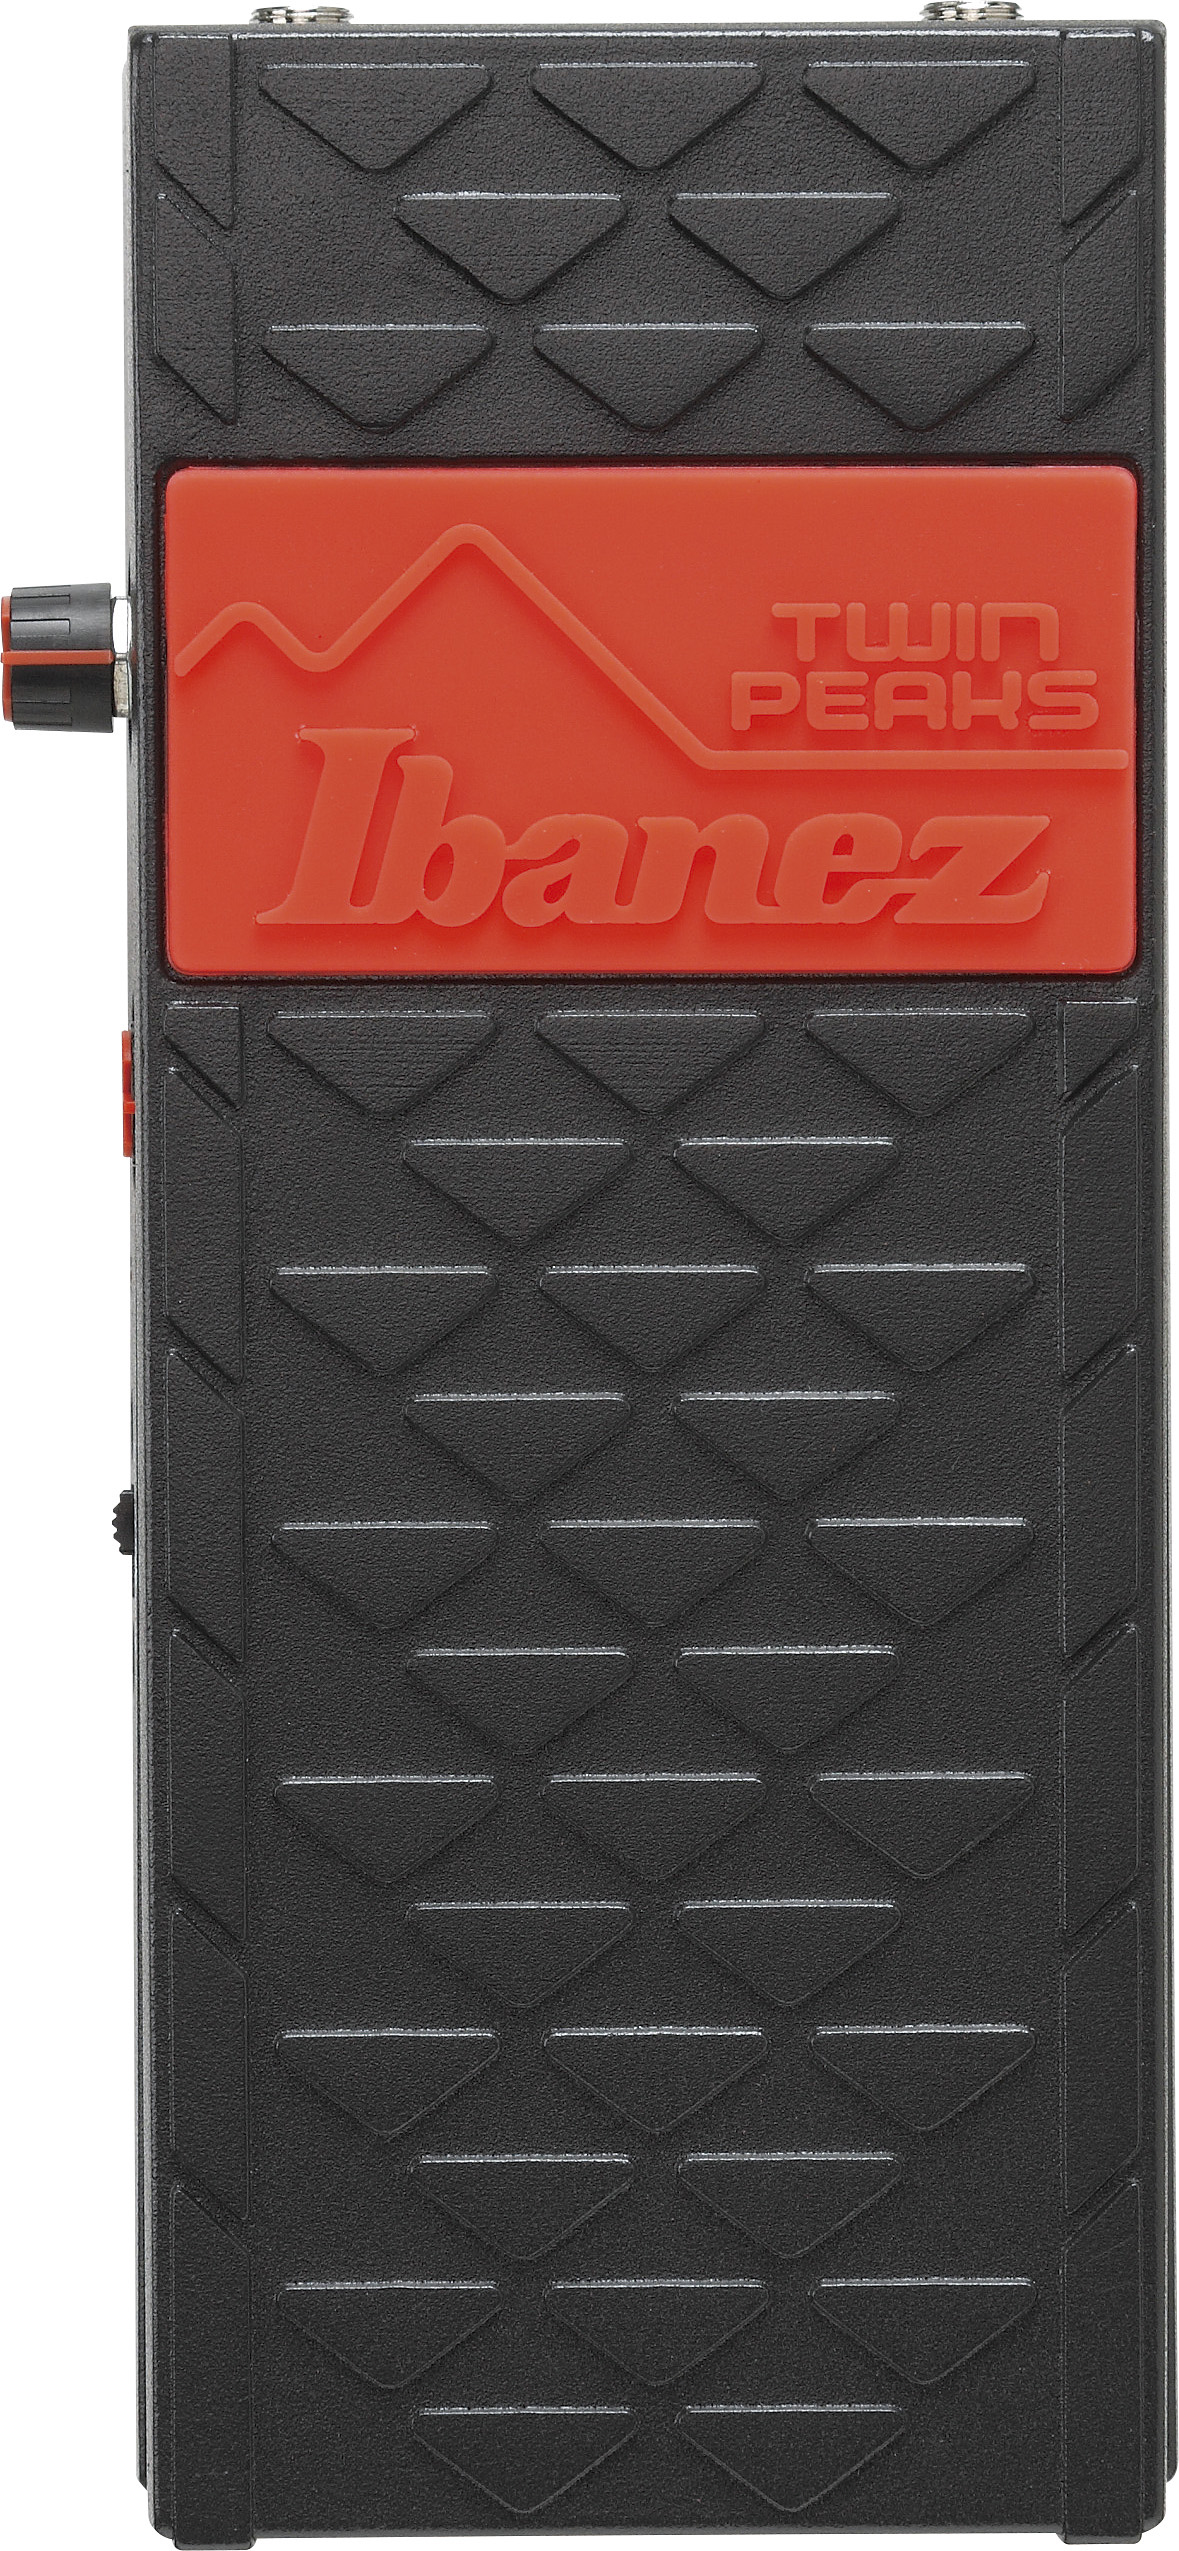 Ibanez Twp10 Twin Peaks Wah - Wah & filter effect pedal - Variation 3